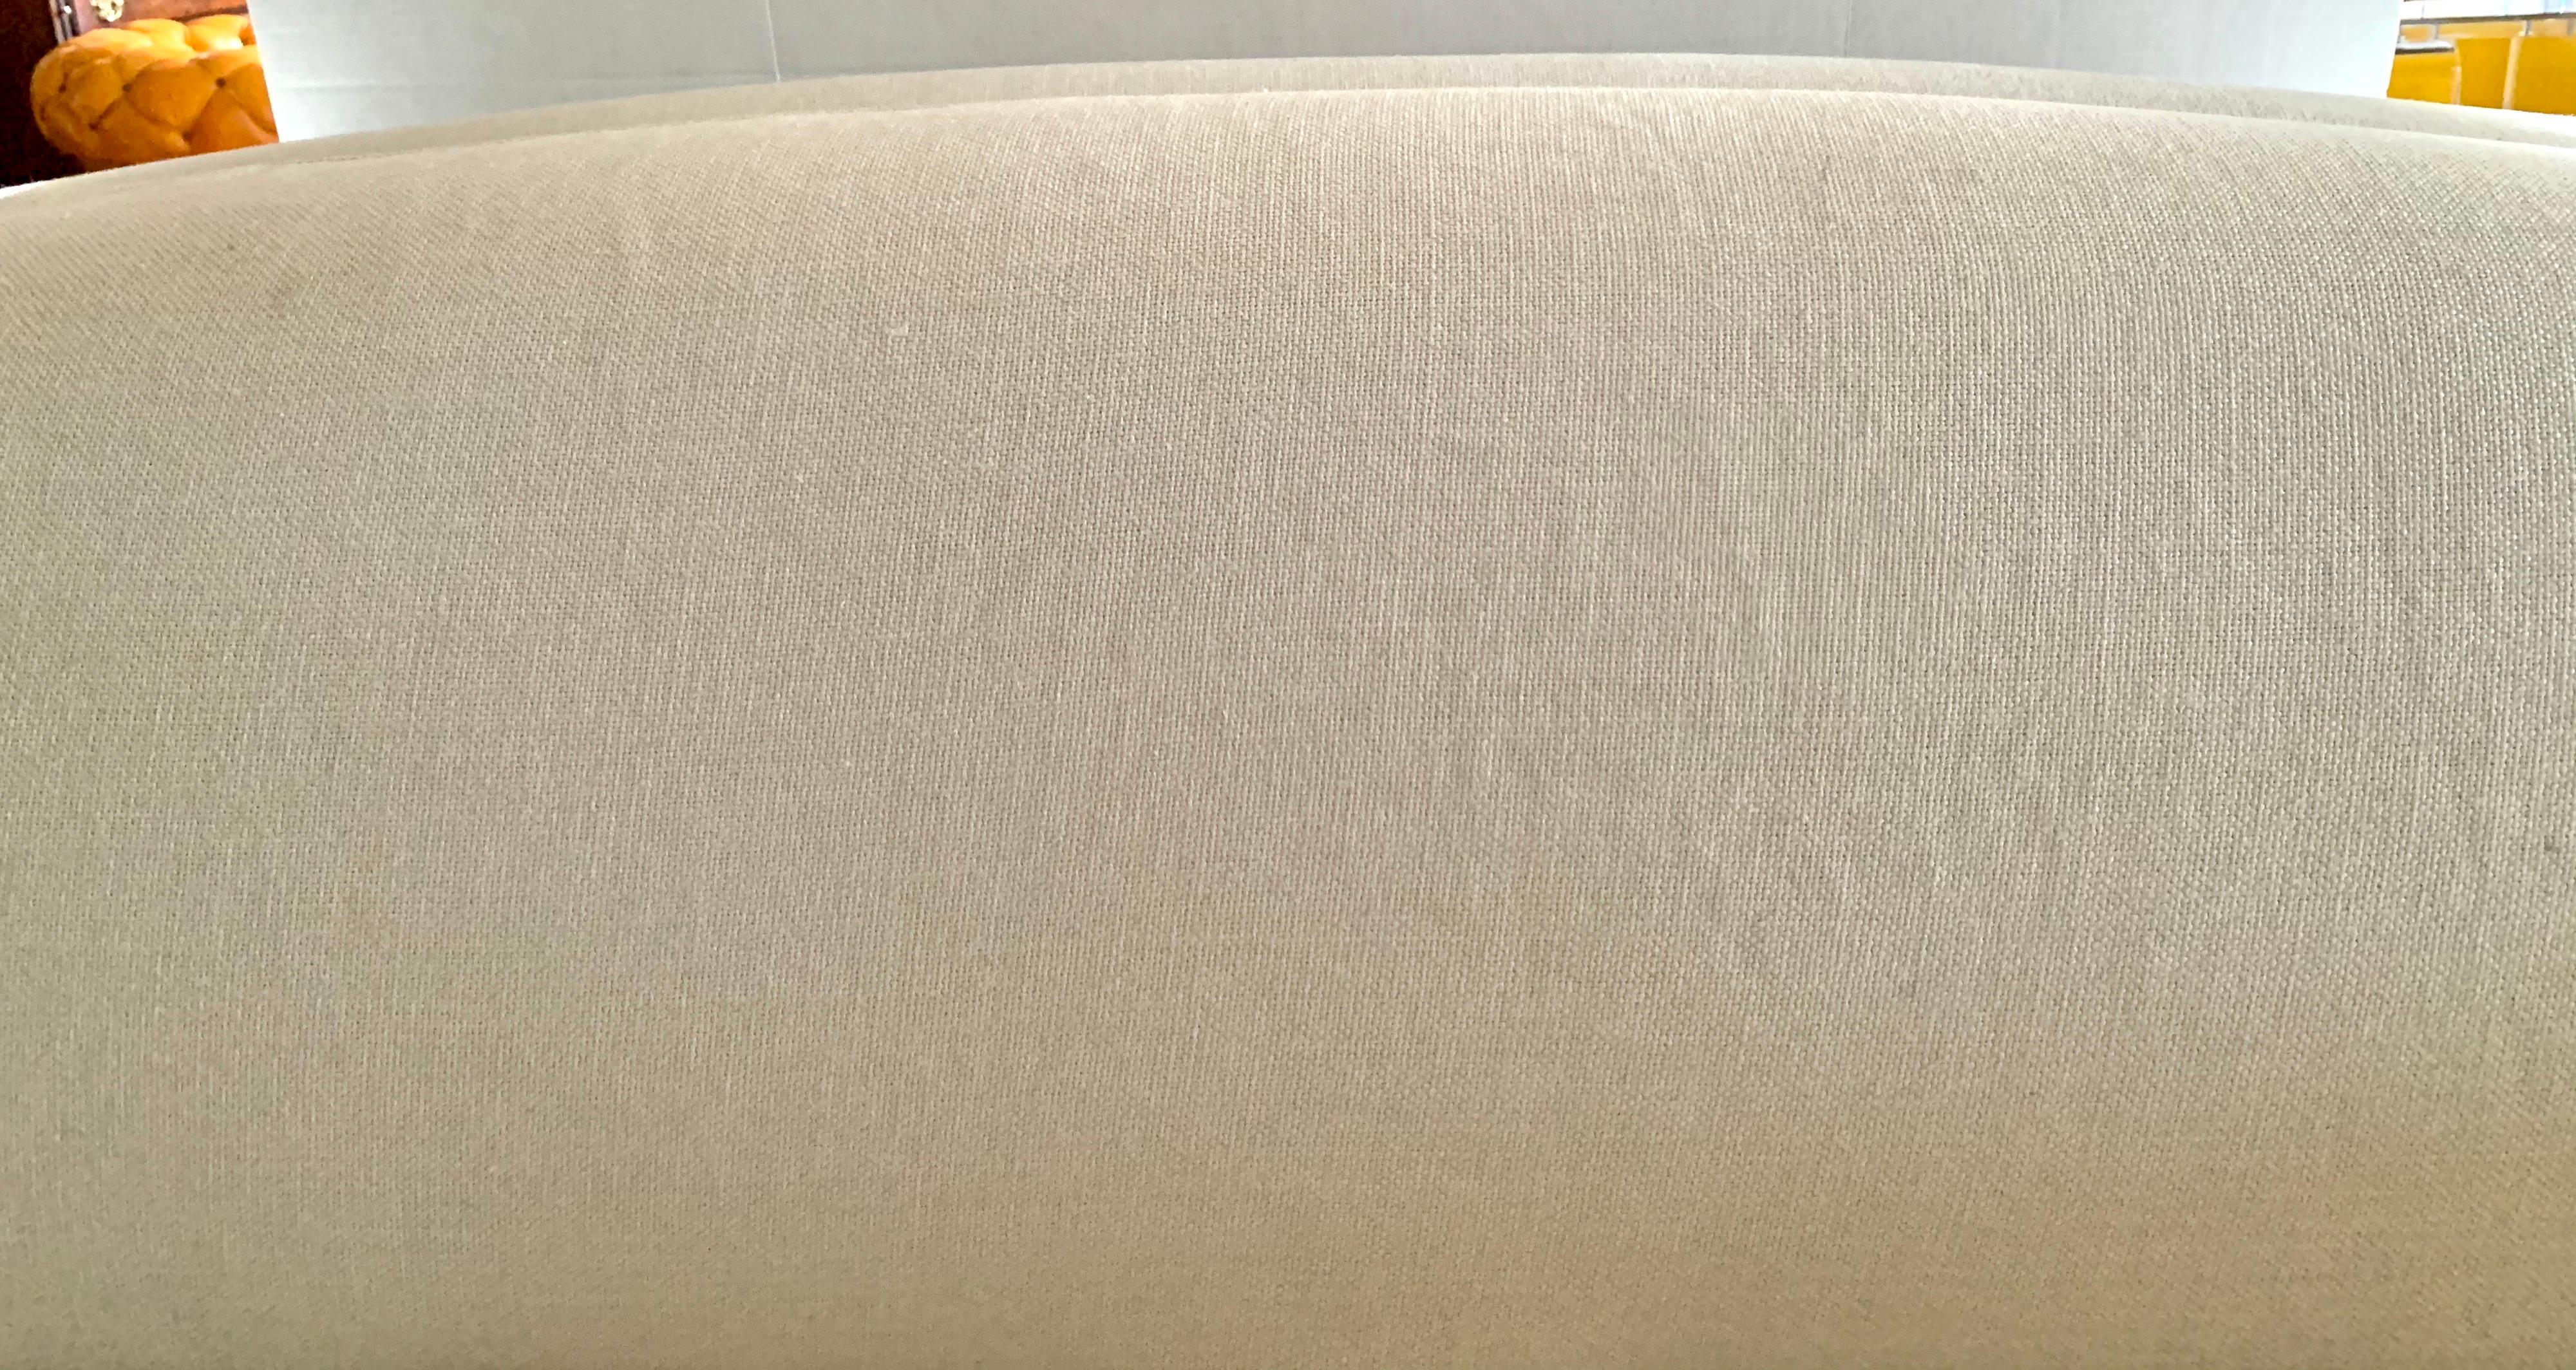 Christian Liaigre Basse Terra Linen Slipcovered Sofa for Holly Hunt Number 2 1